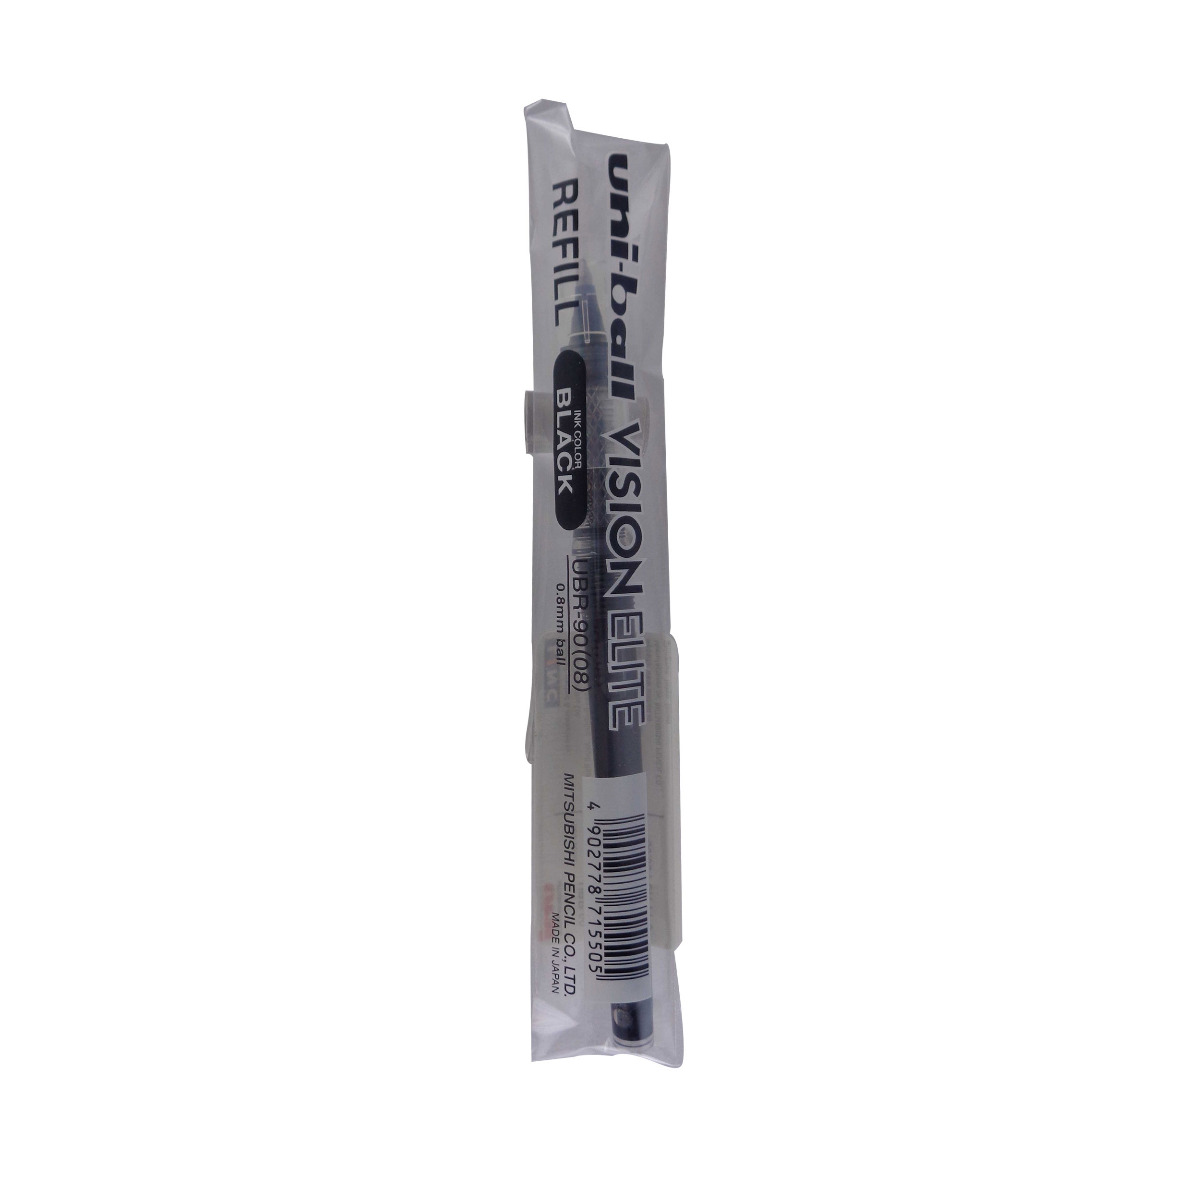 Uniball Vision Elite Model: 13586 UBR-90 Black ink 0.8mm gel pen Refill